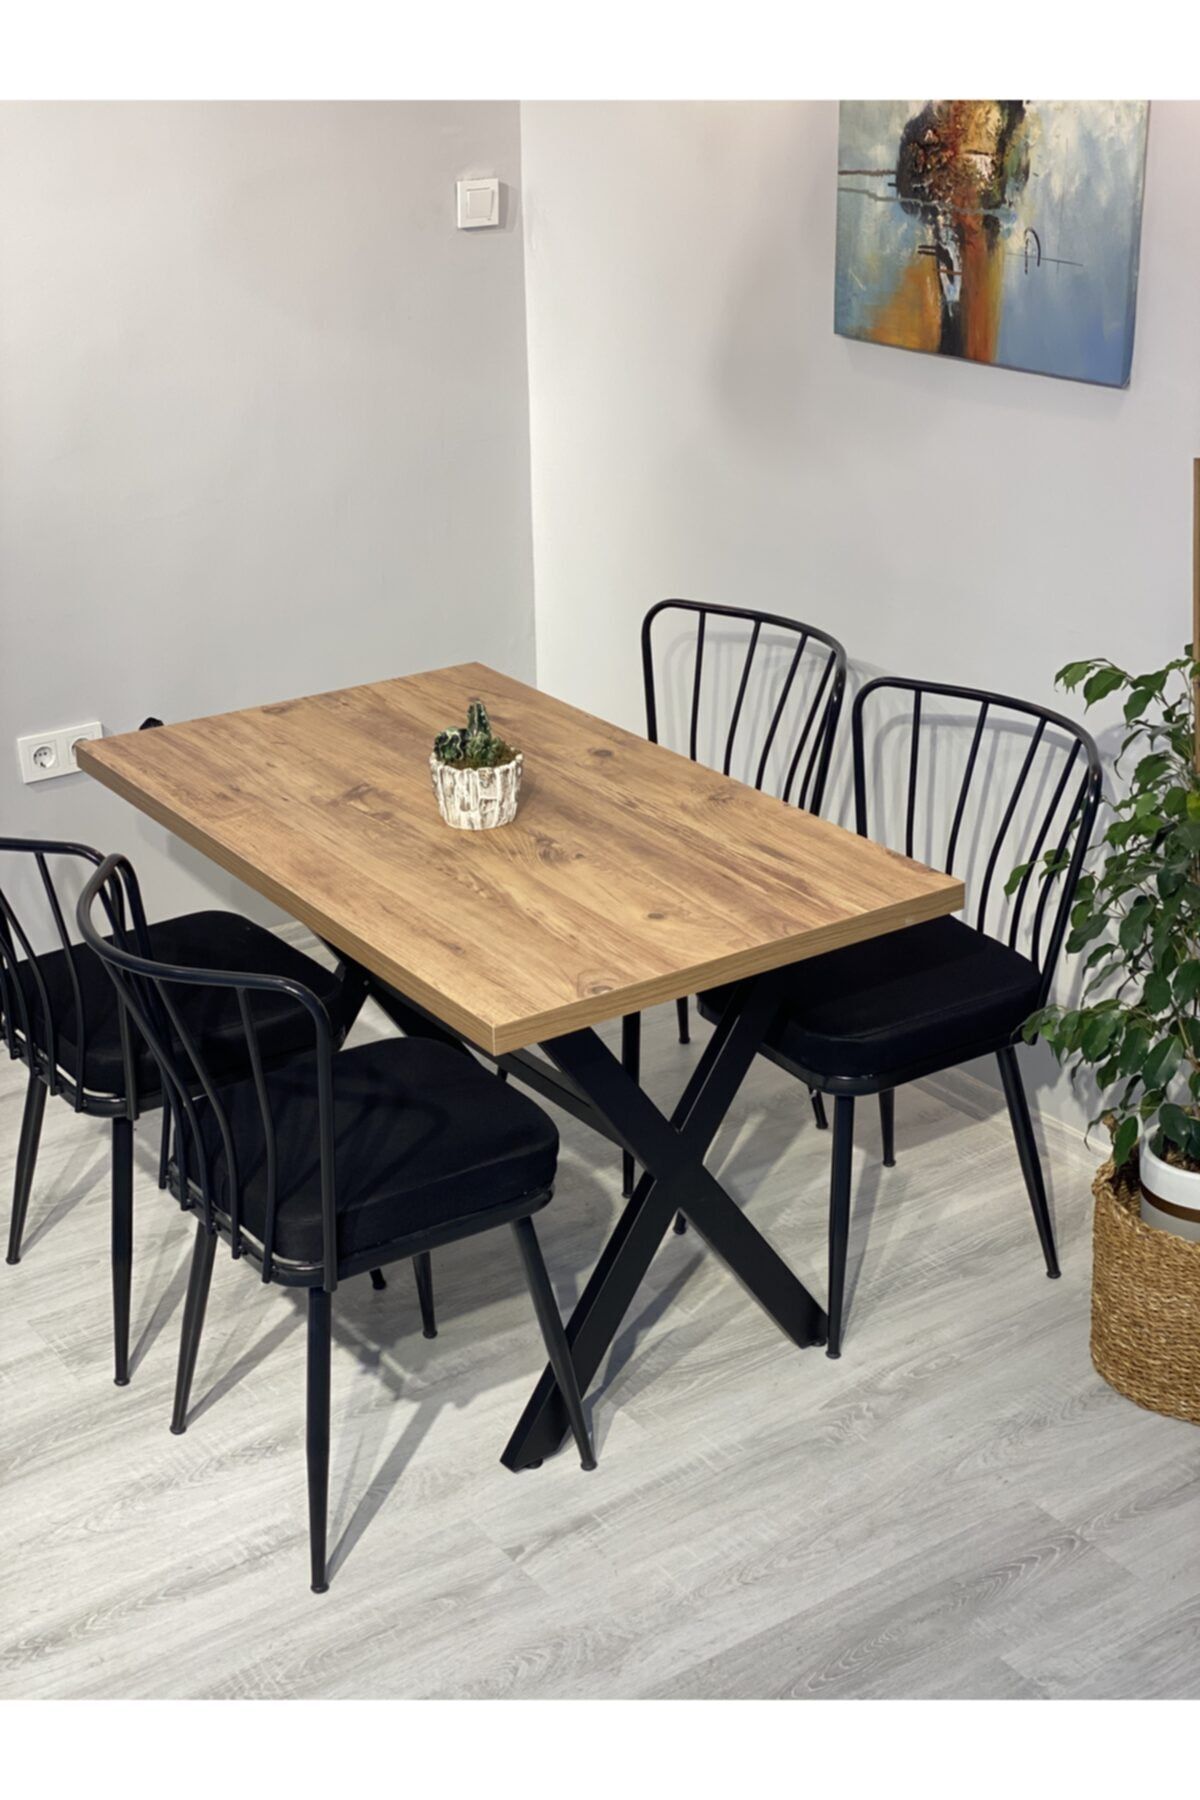 Resa mobilya design Yemek Masası Takımı 120x70 Ve 4 Adet Güneş Sandalye